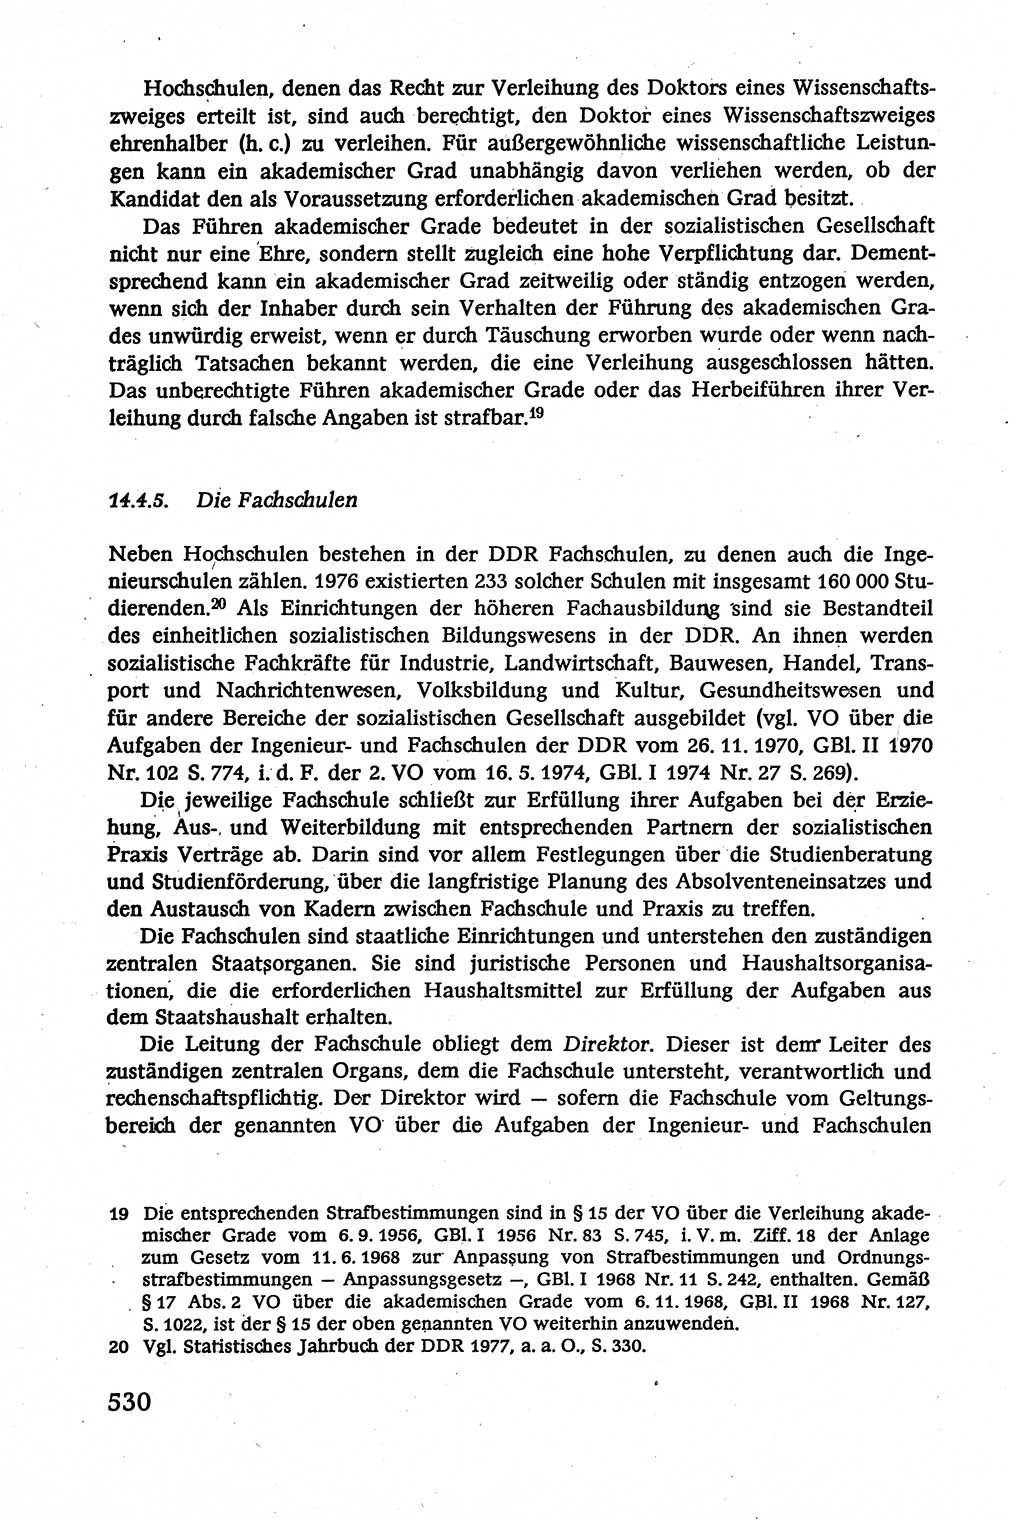 Verwaltungsrecht [Deutsche Demokratische Republik (DDR)], Lehrbuch 1979, Seite 530 (Verw.-R. DDR Lb. 1979, S. 530)